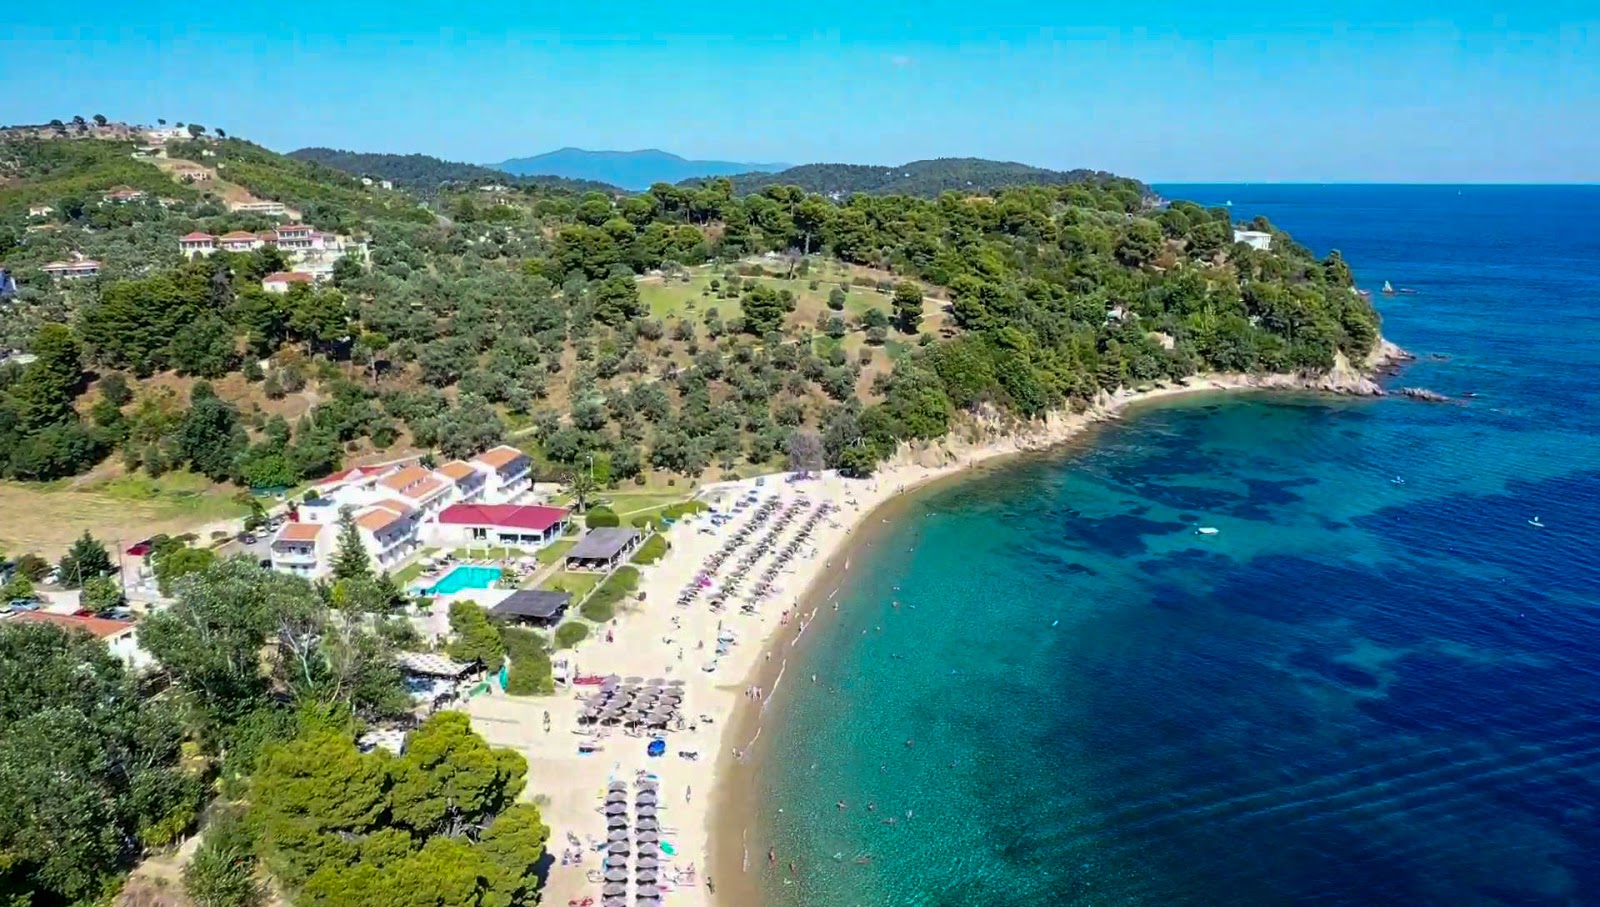 Fotografie cu Troulos beach - locul popular printre cunoscătorii de relaxare